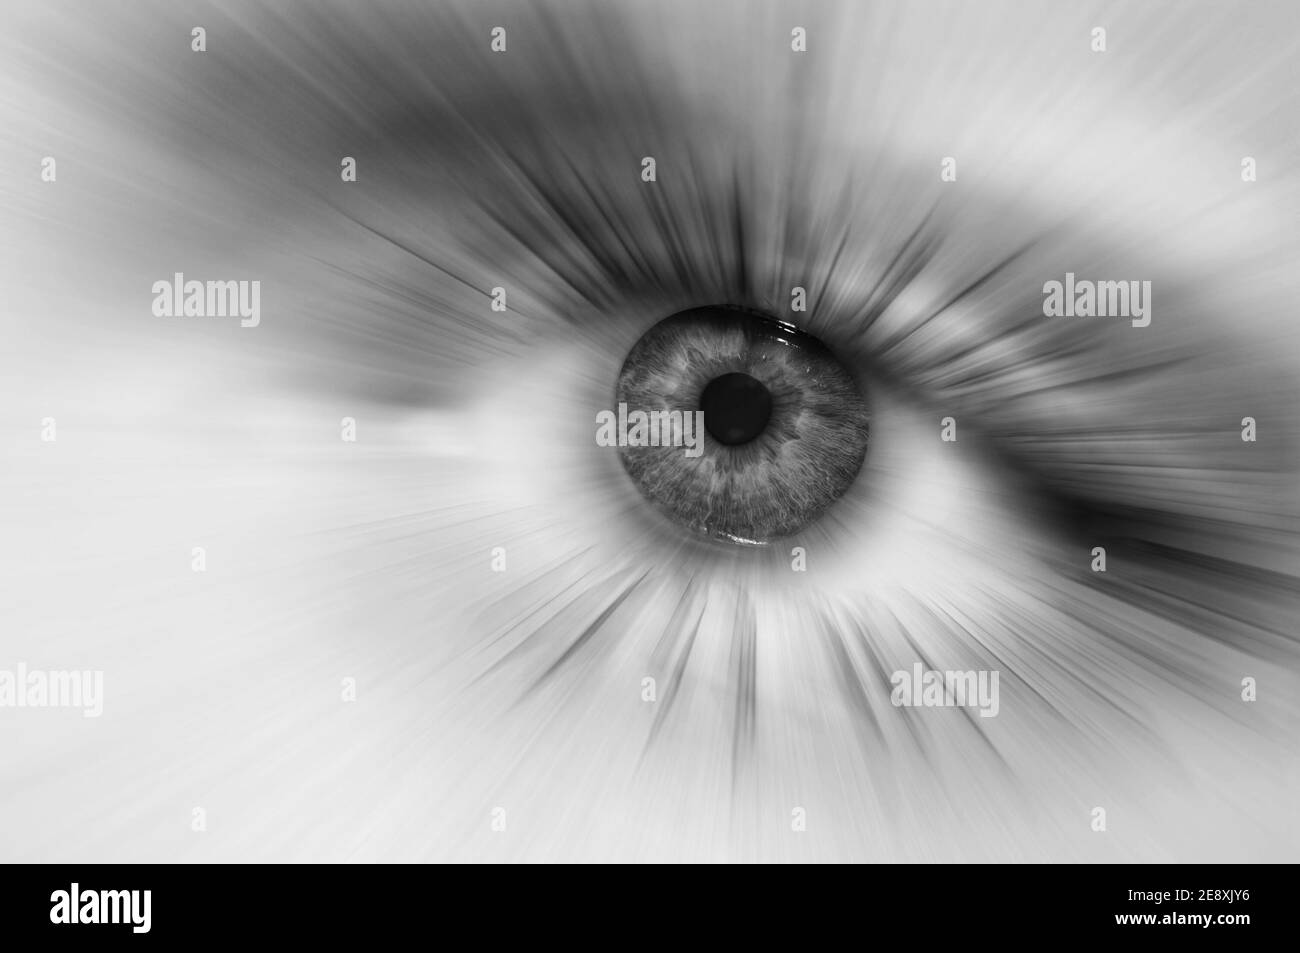 Macro occhio bianco e nero. Raggi astratti divergenti dall'allievo dell'occhio umano. Concetto di sogni o astrazione, purezza o trattamento della visione. Foto Stock